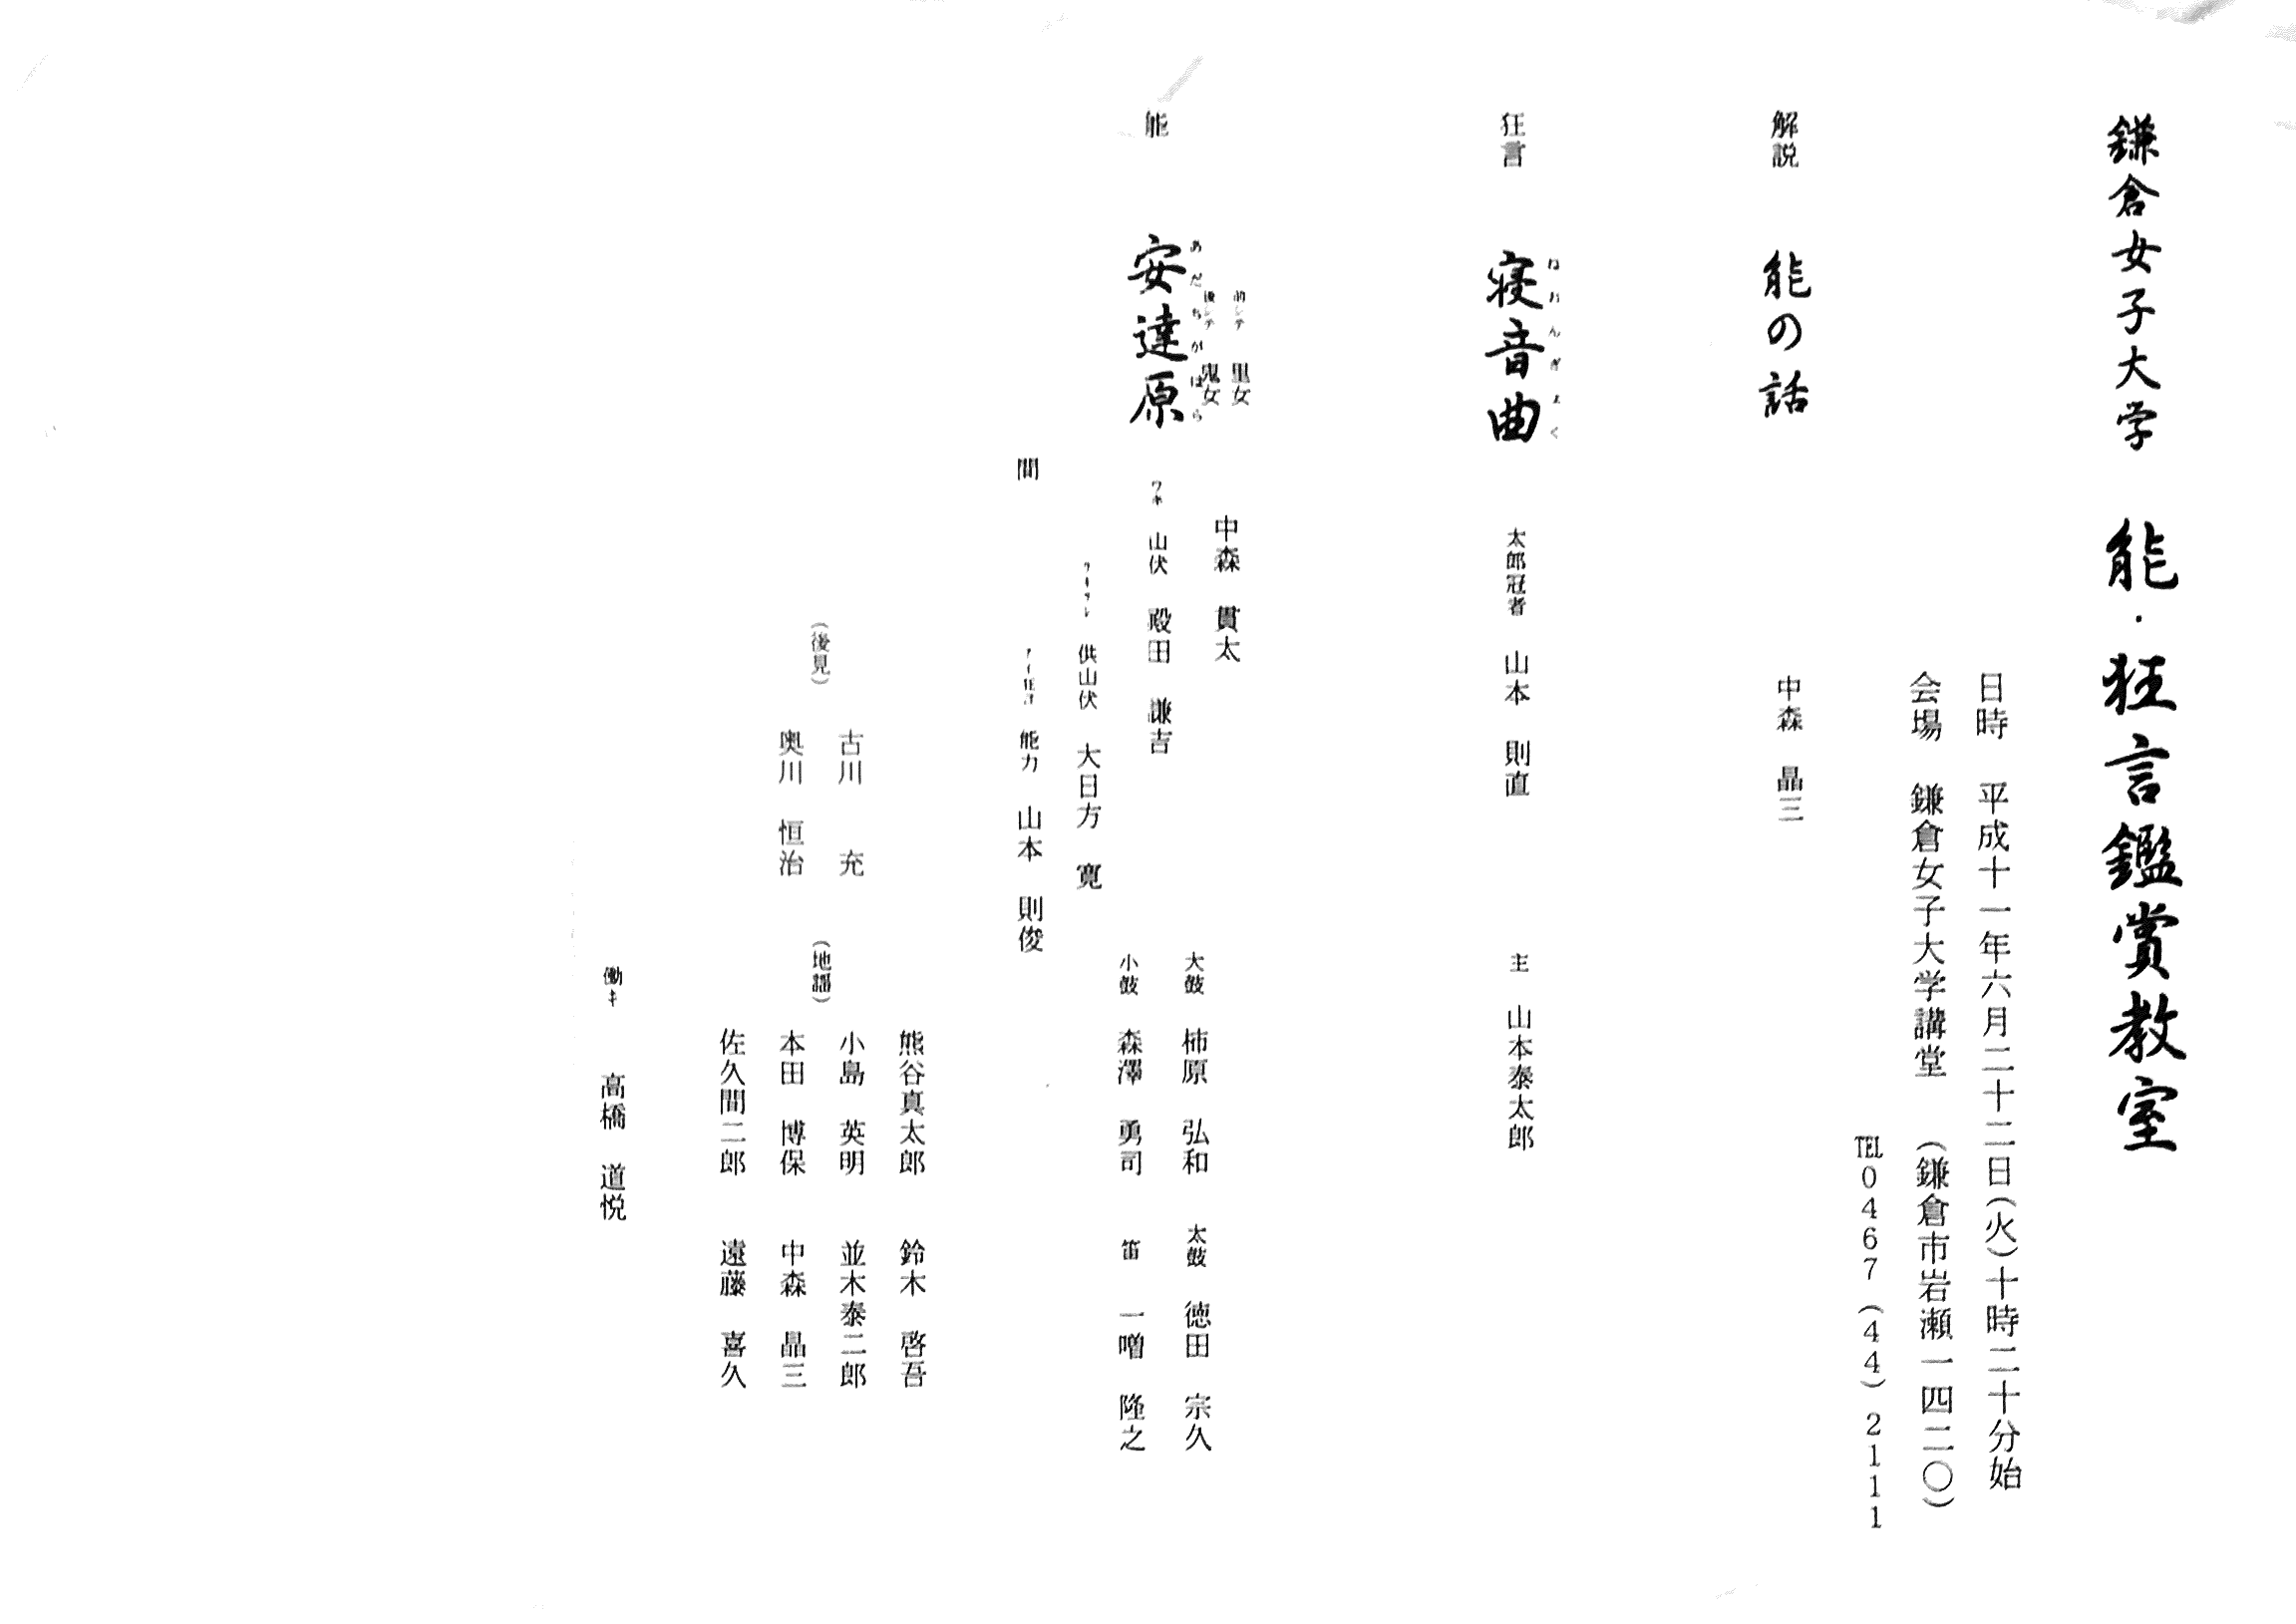 1999年6月22日鎌倉女子大能楽鑑賞教室「安達原」